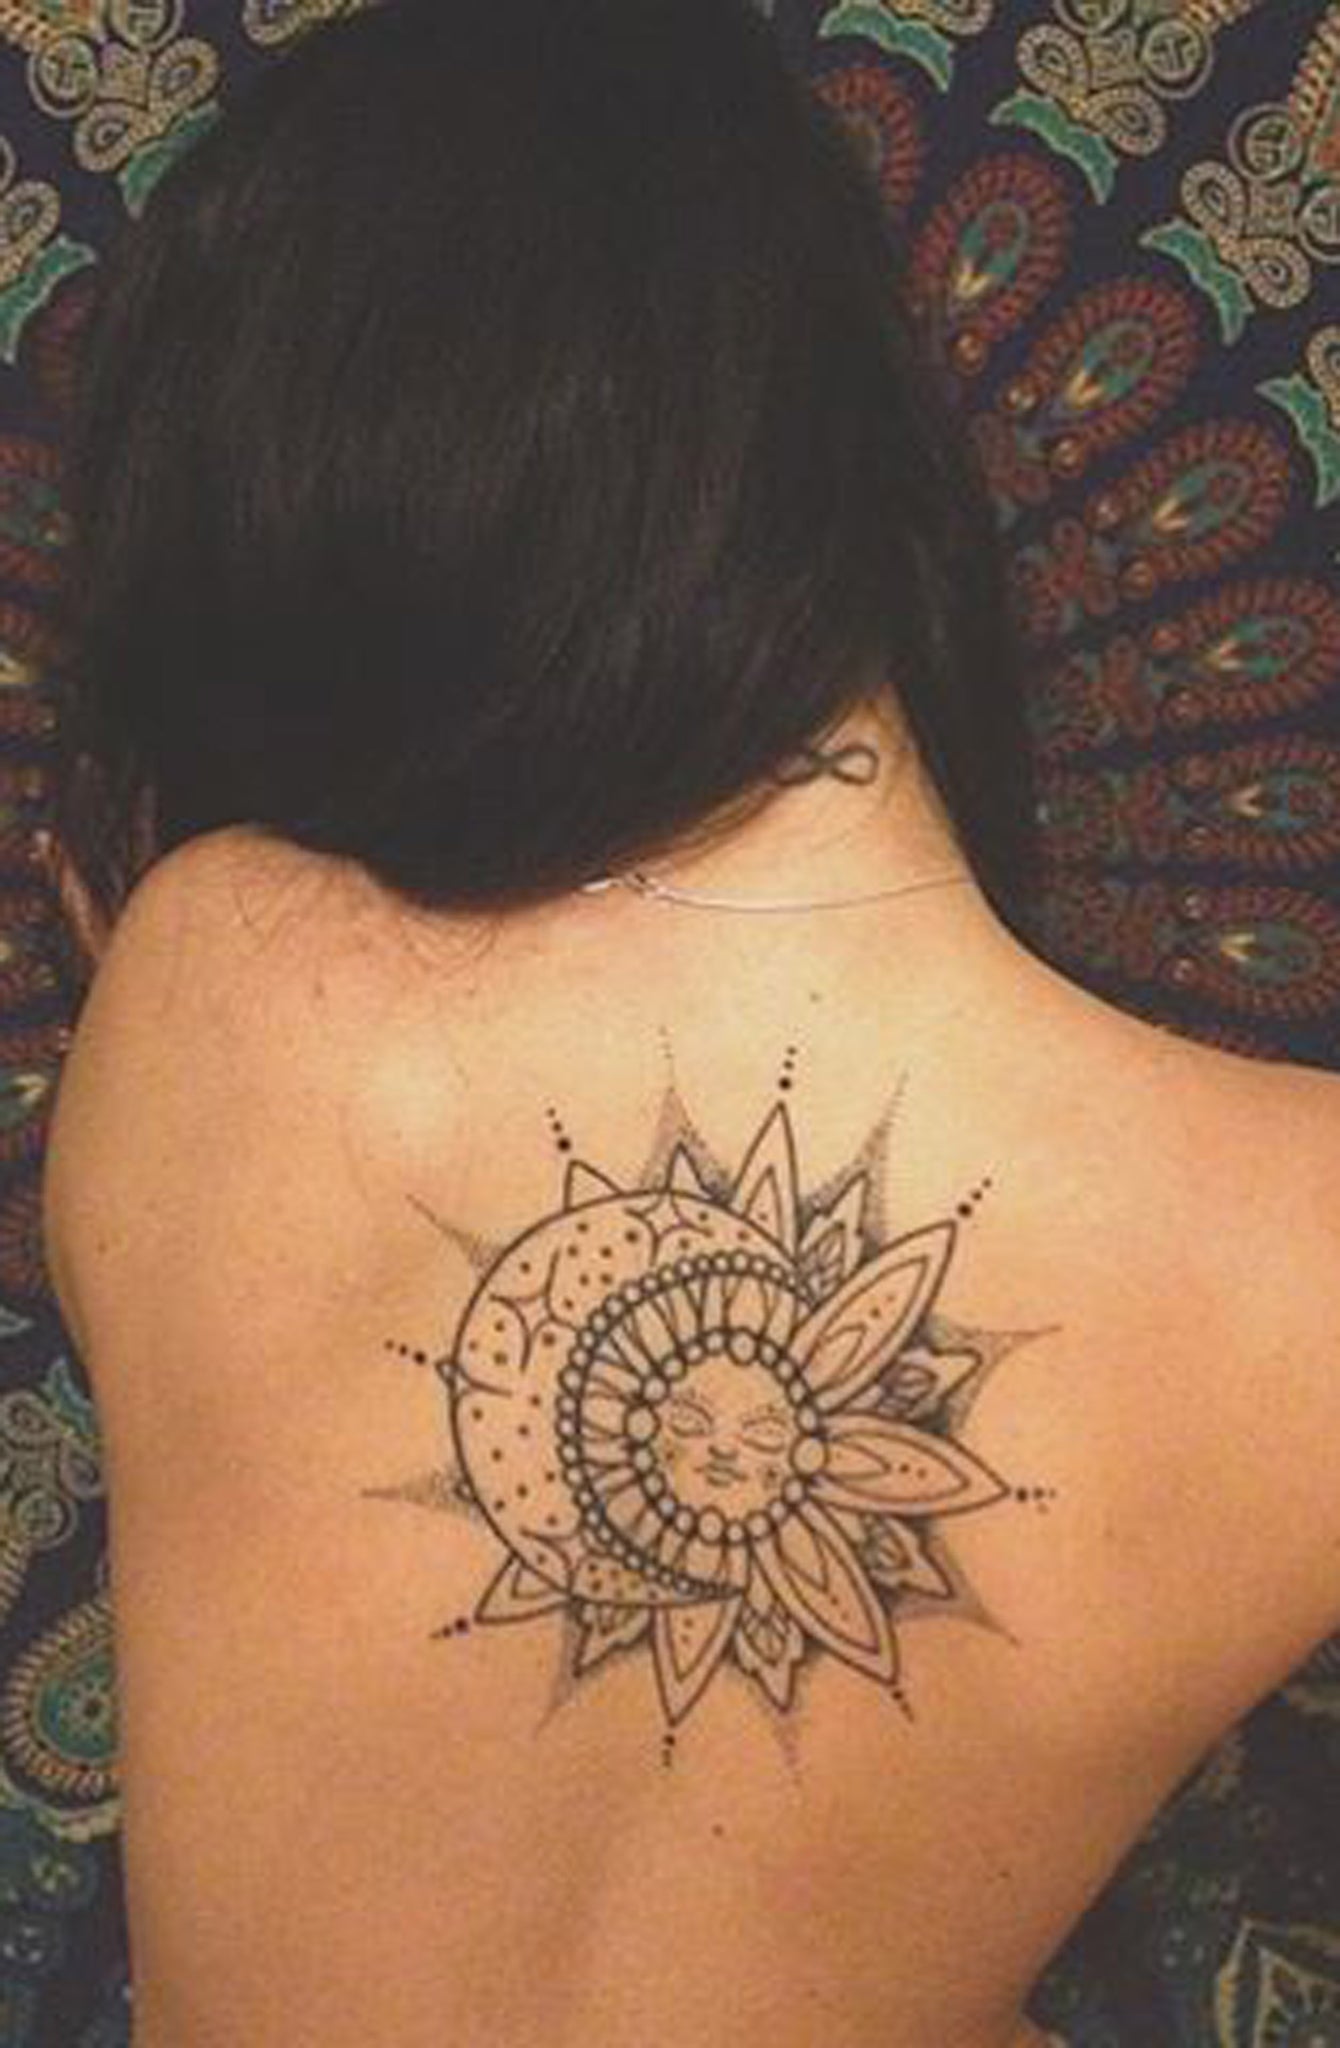 Black Geometric Sun & Moon Mandala Back Tattoo Idea Designs for Women -  Diseños geométricos negros de la mandala de la parte posterior del tatuaje del sol y de la luna de la mandala para las mujeres - www.MyBodiArt.com